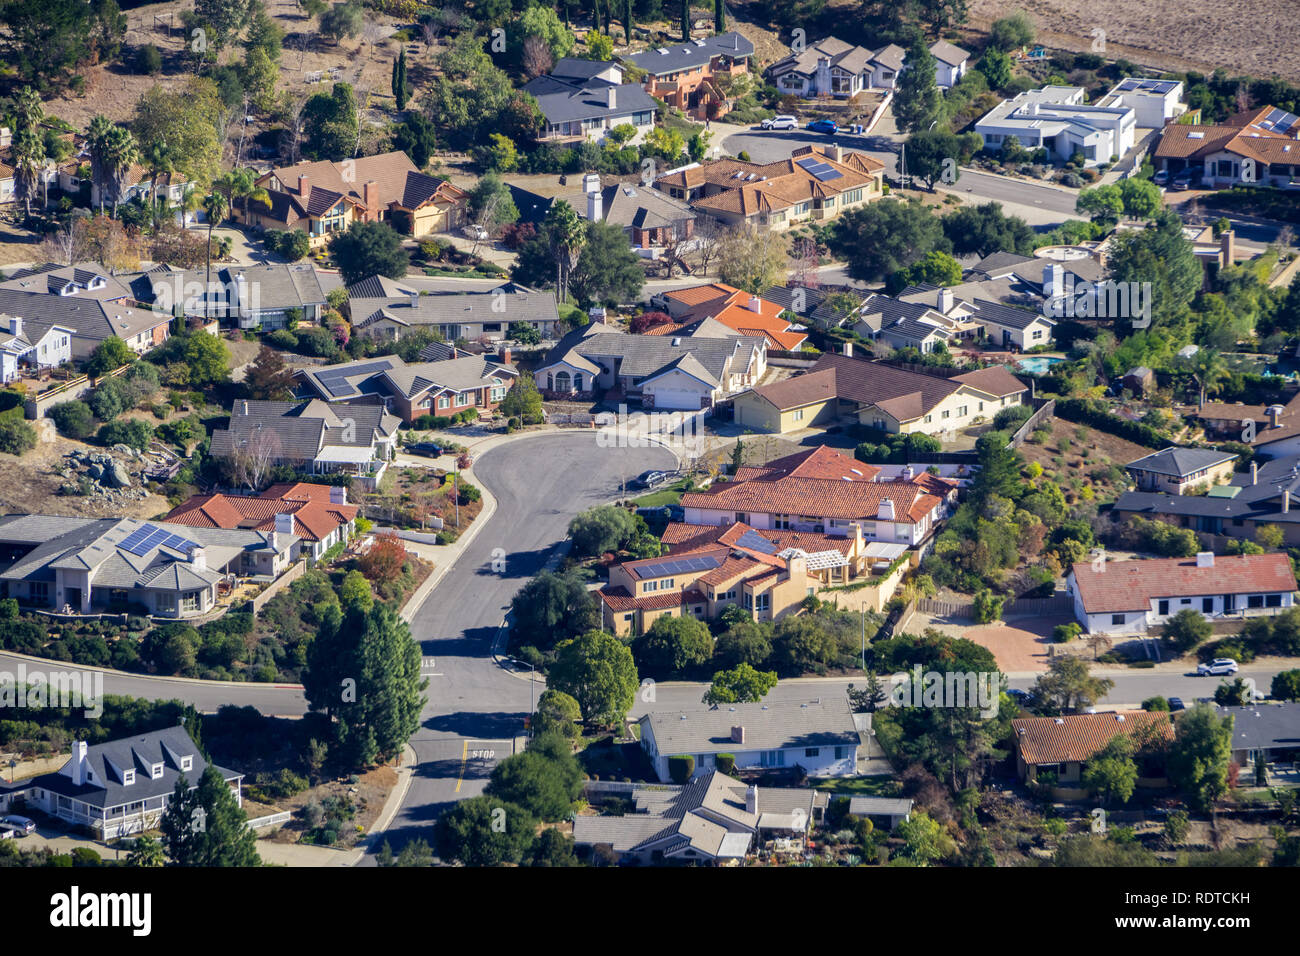 Vista aerea di un quartiere residenziale a nord di San Luis Obispo, California centrale Foto Stock